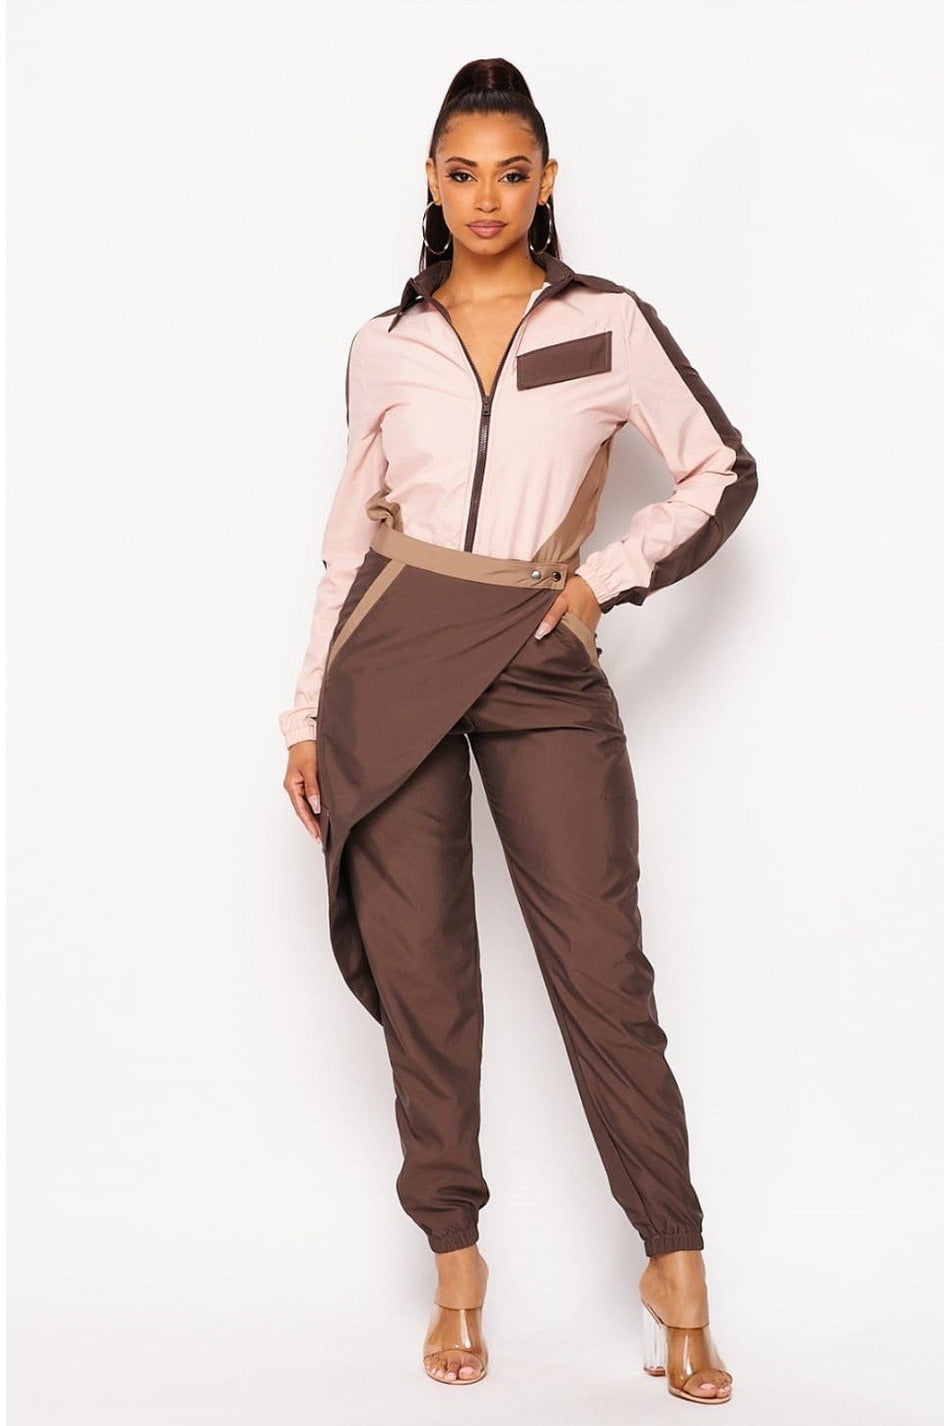 Brown & Pink Jumpsuit - 227 Boutique